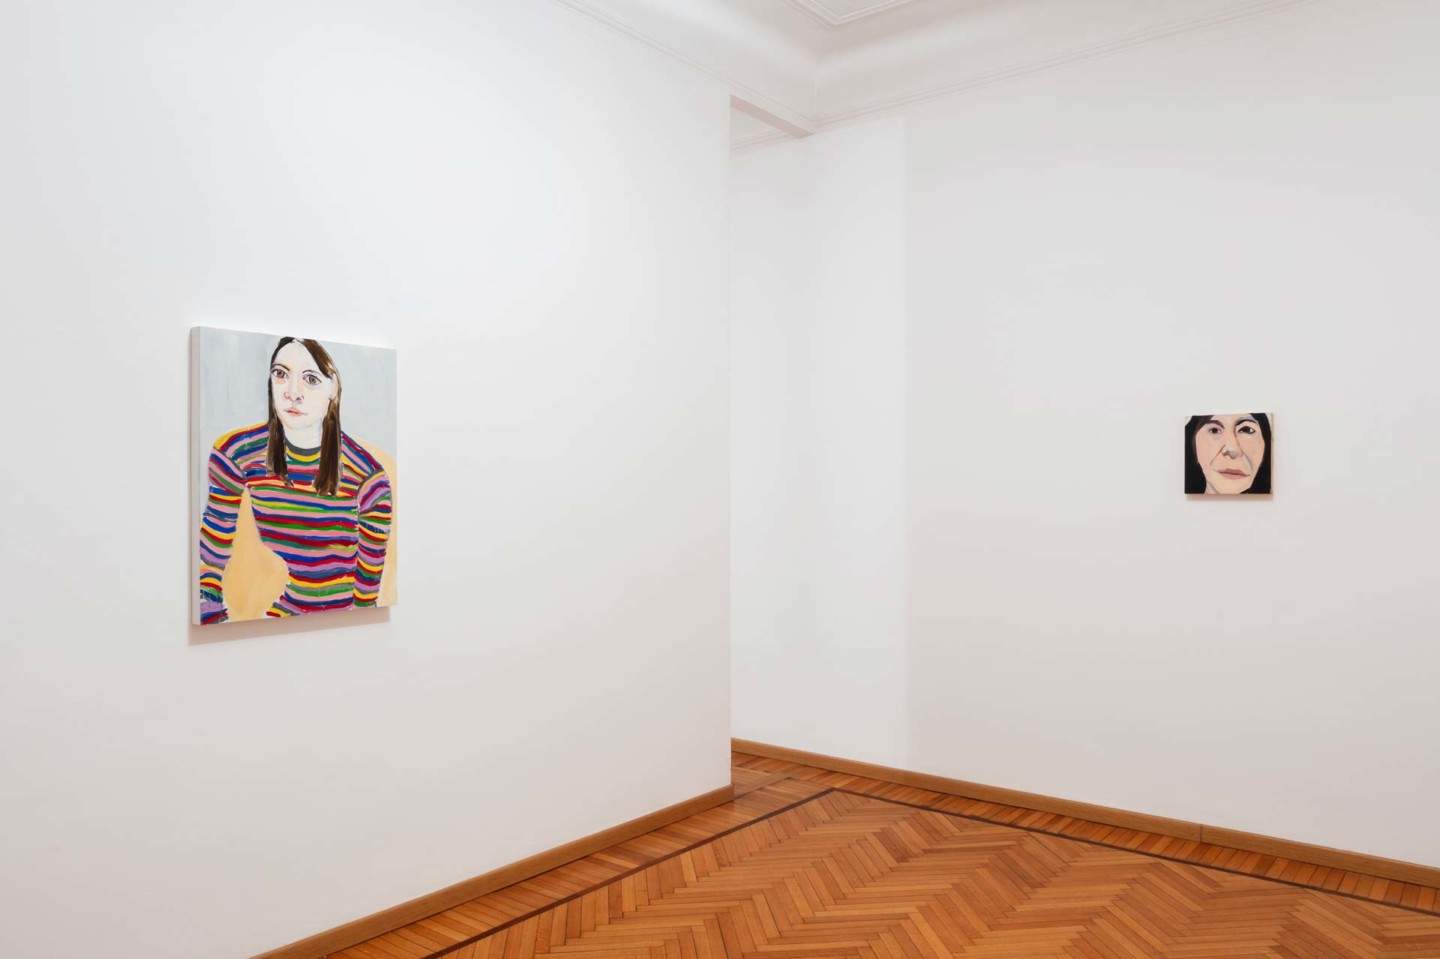 Milan, la galerie de Cardenas accueille une exposition de Chantal Joffe consacrée aux femmes écrivains.